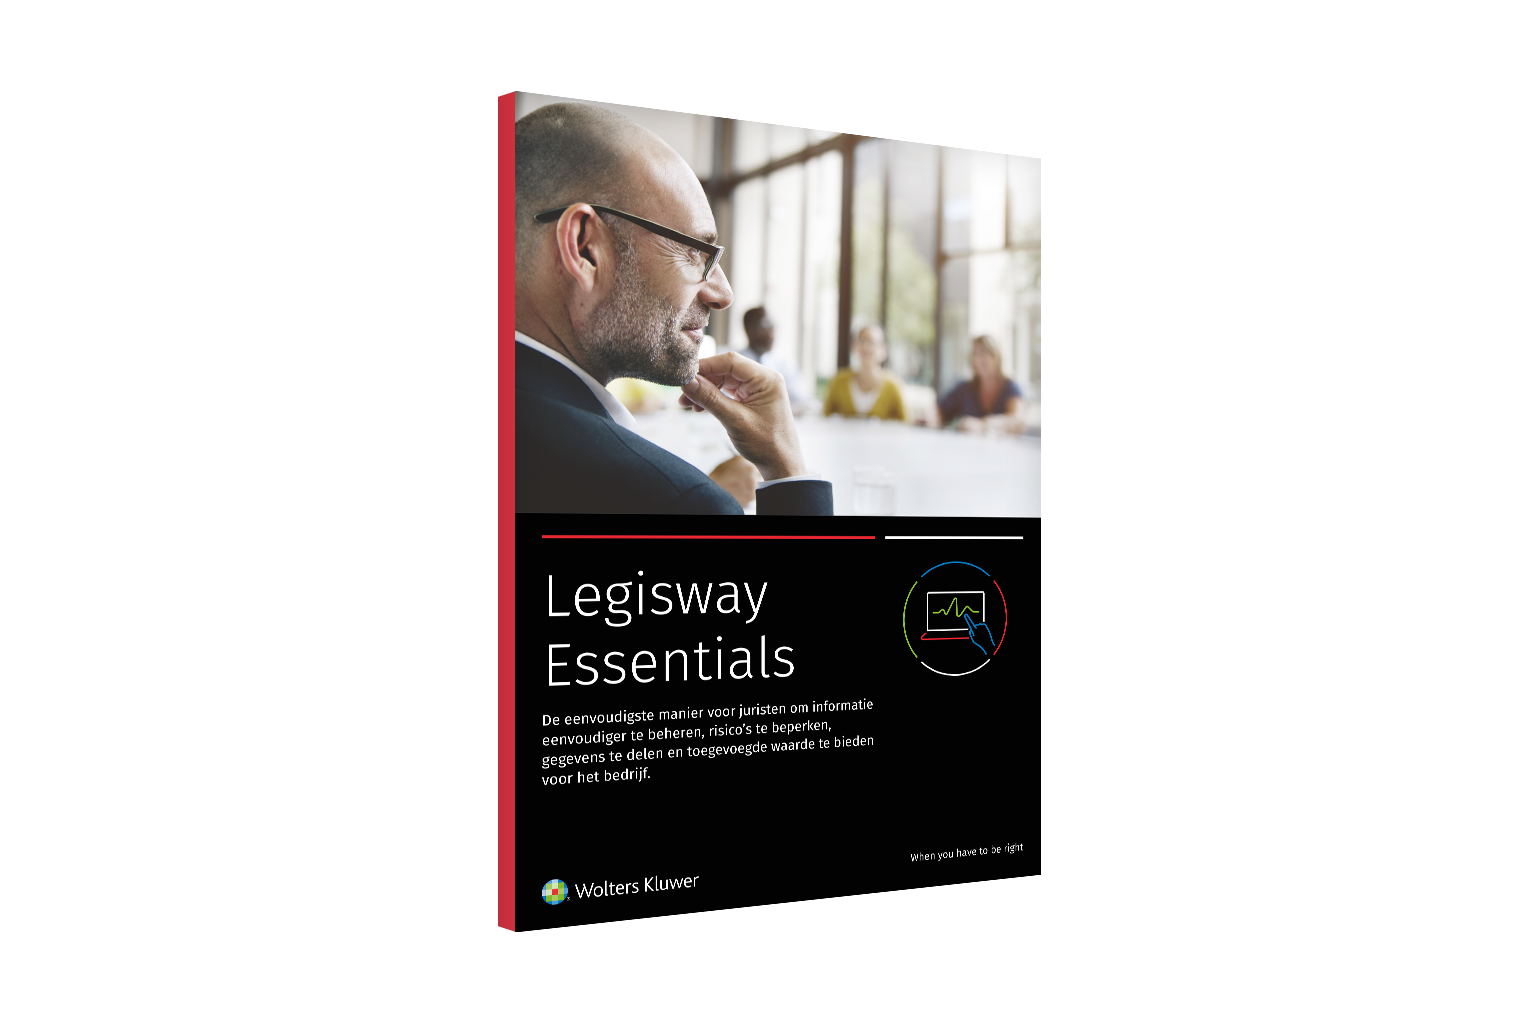 cover image of Legisway Essentials brochure